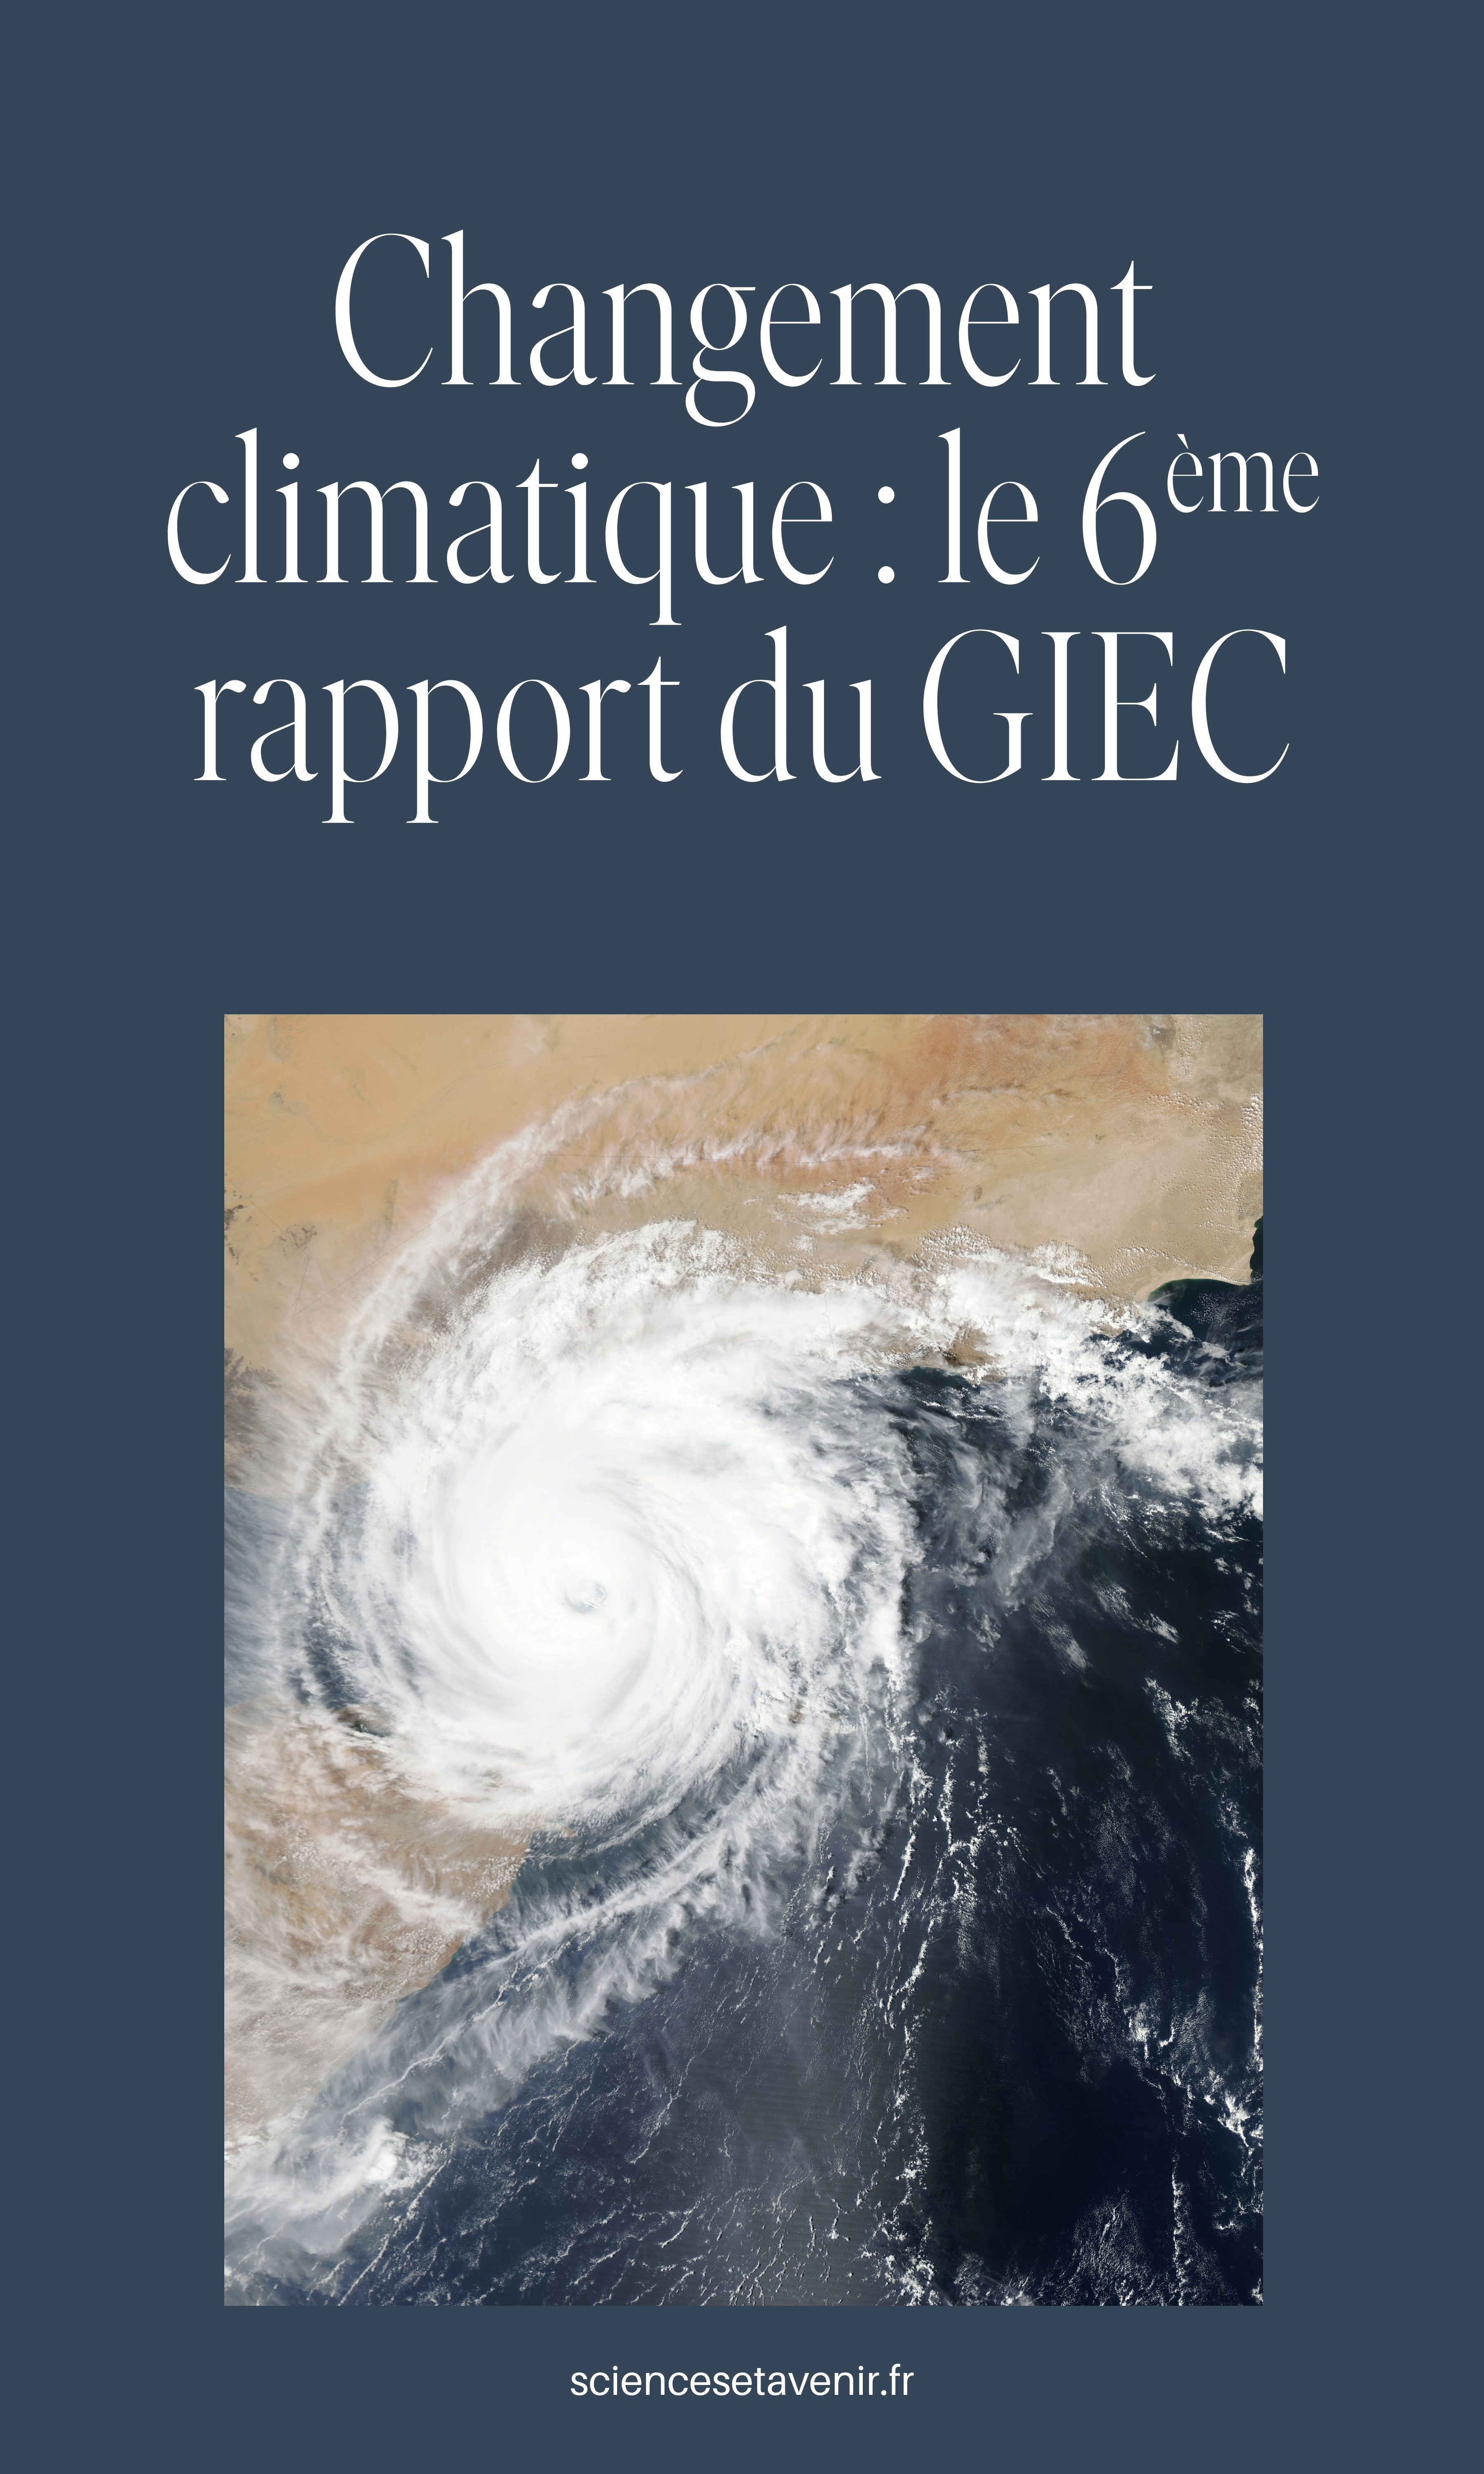 Changement climatique : le 6eme rapport du Giec